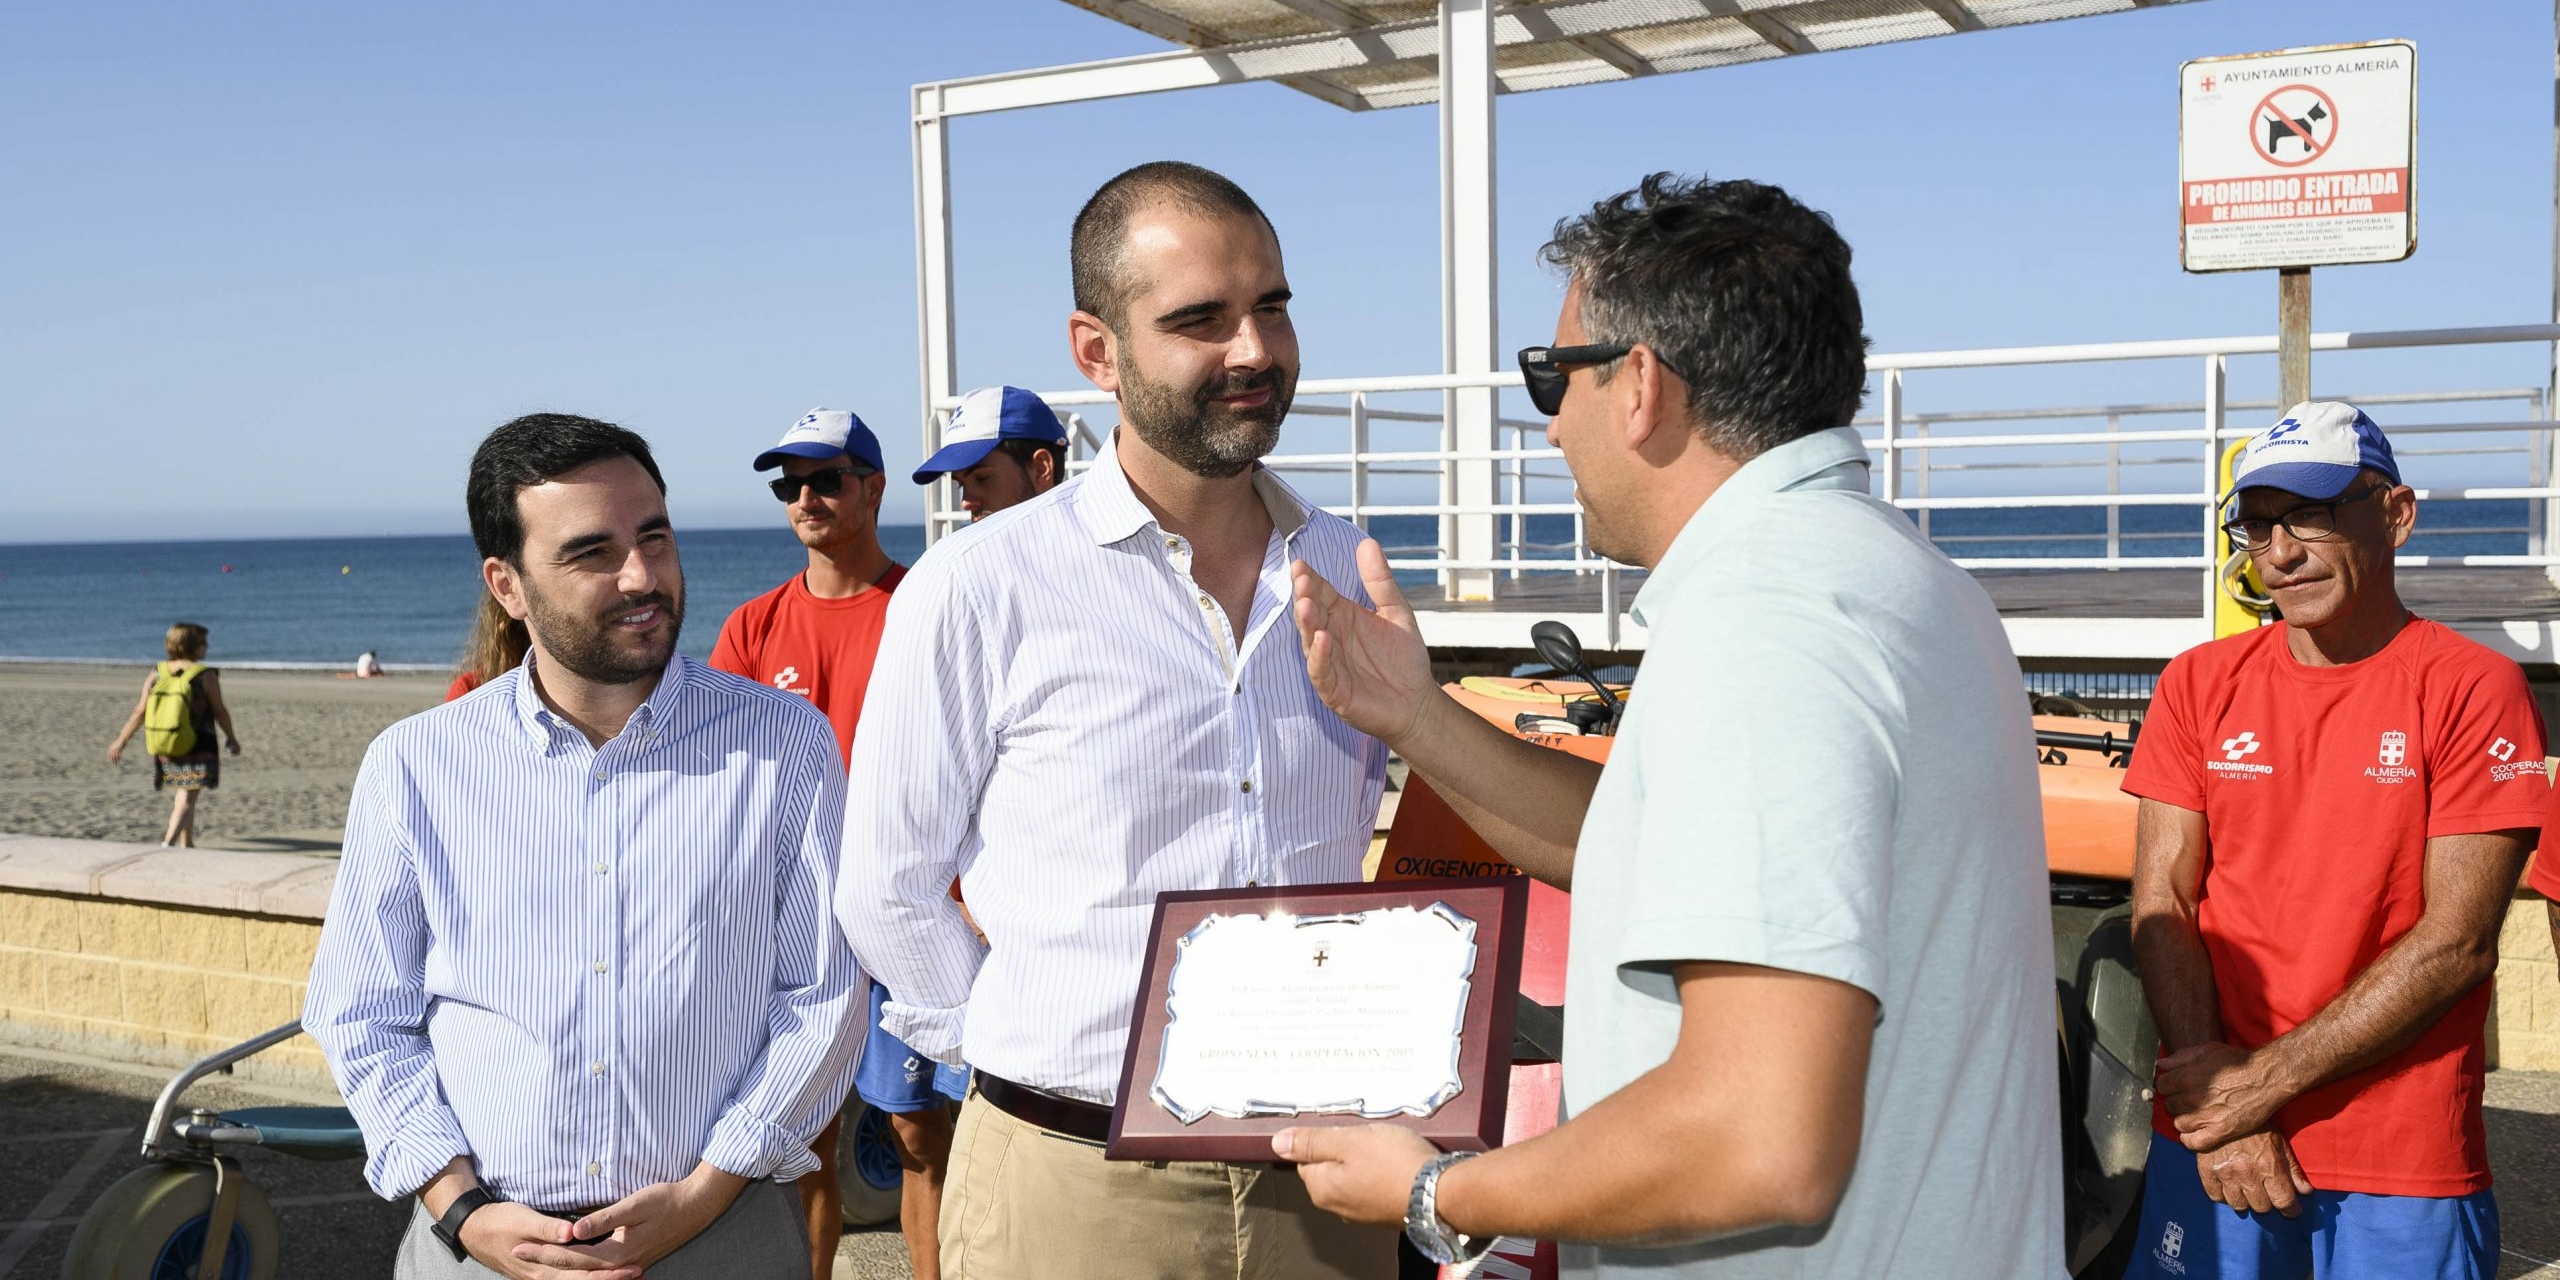 100719 Alcalde reconocimientos socorristas3 scaled uai - Turismo Almería